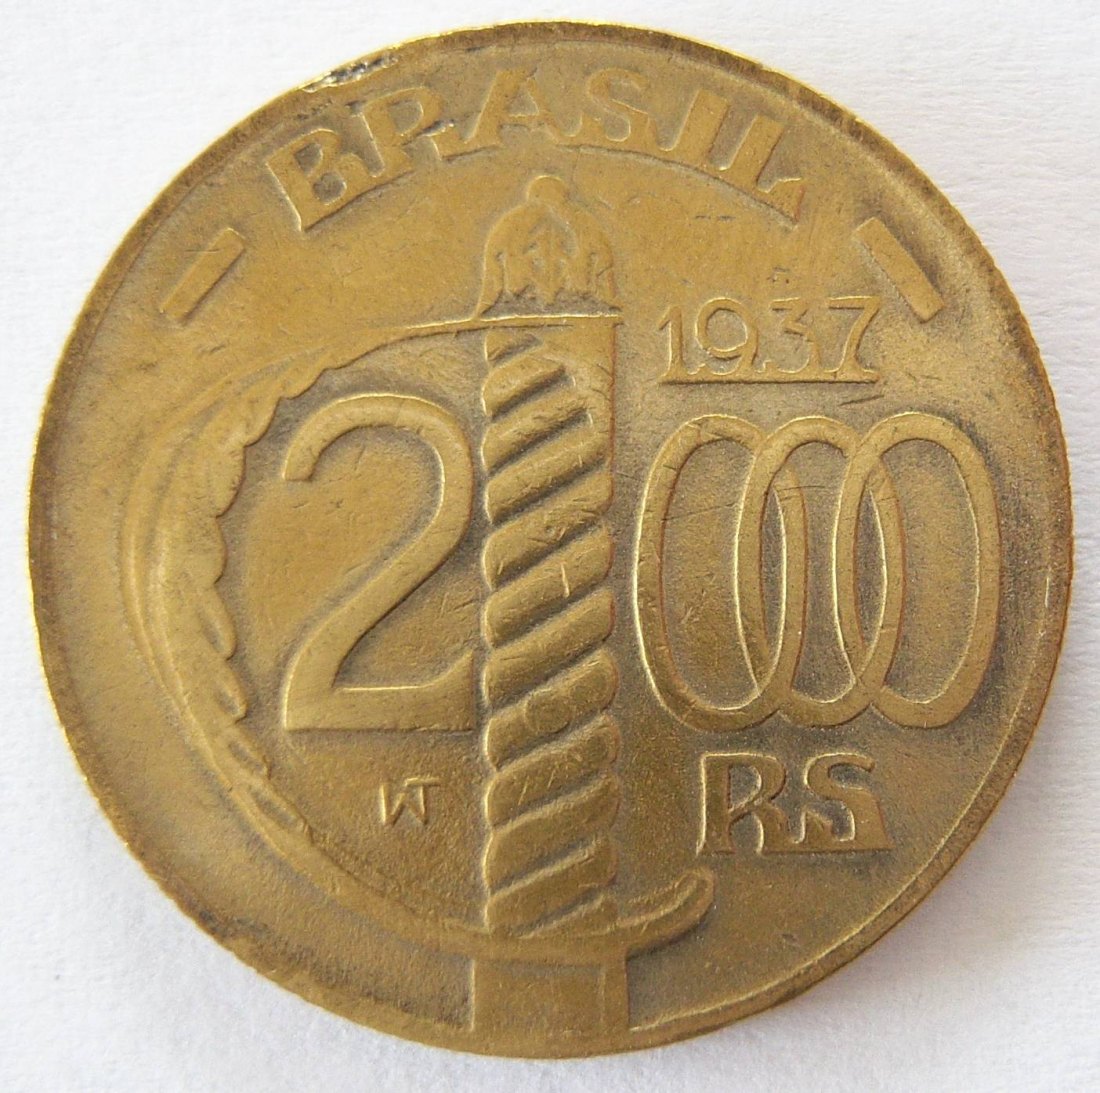  Brasilien 2000 Reis 1937   